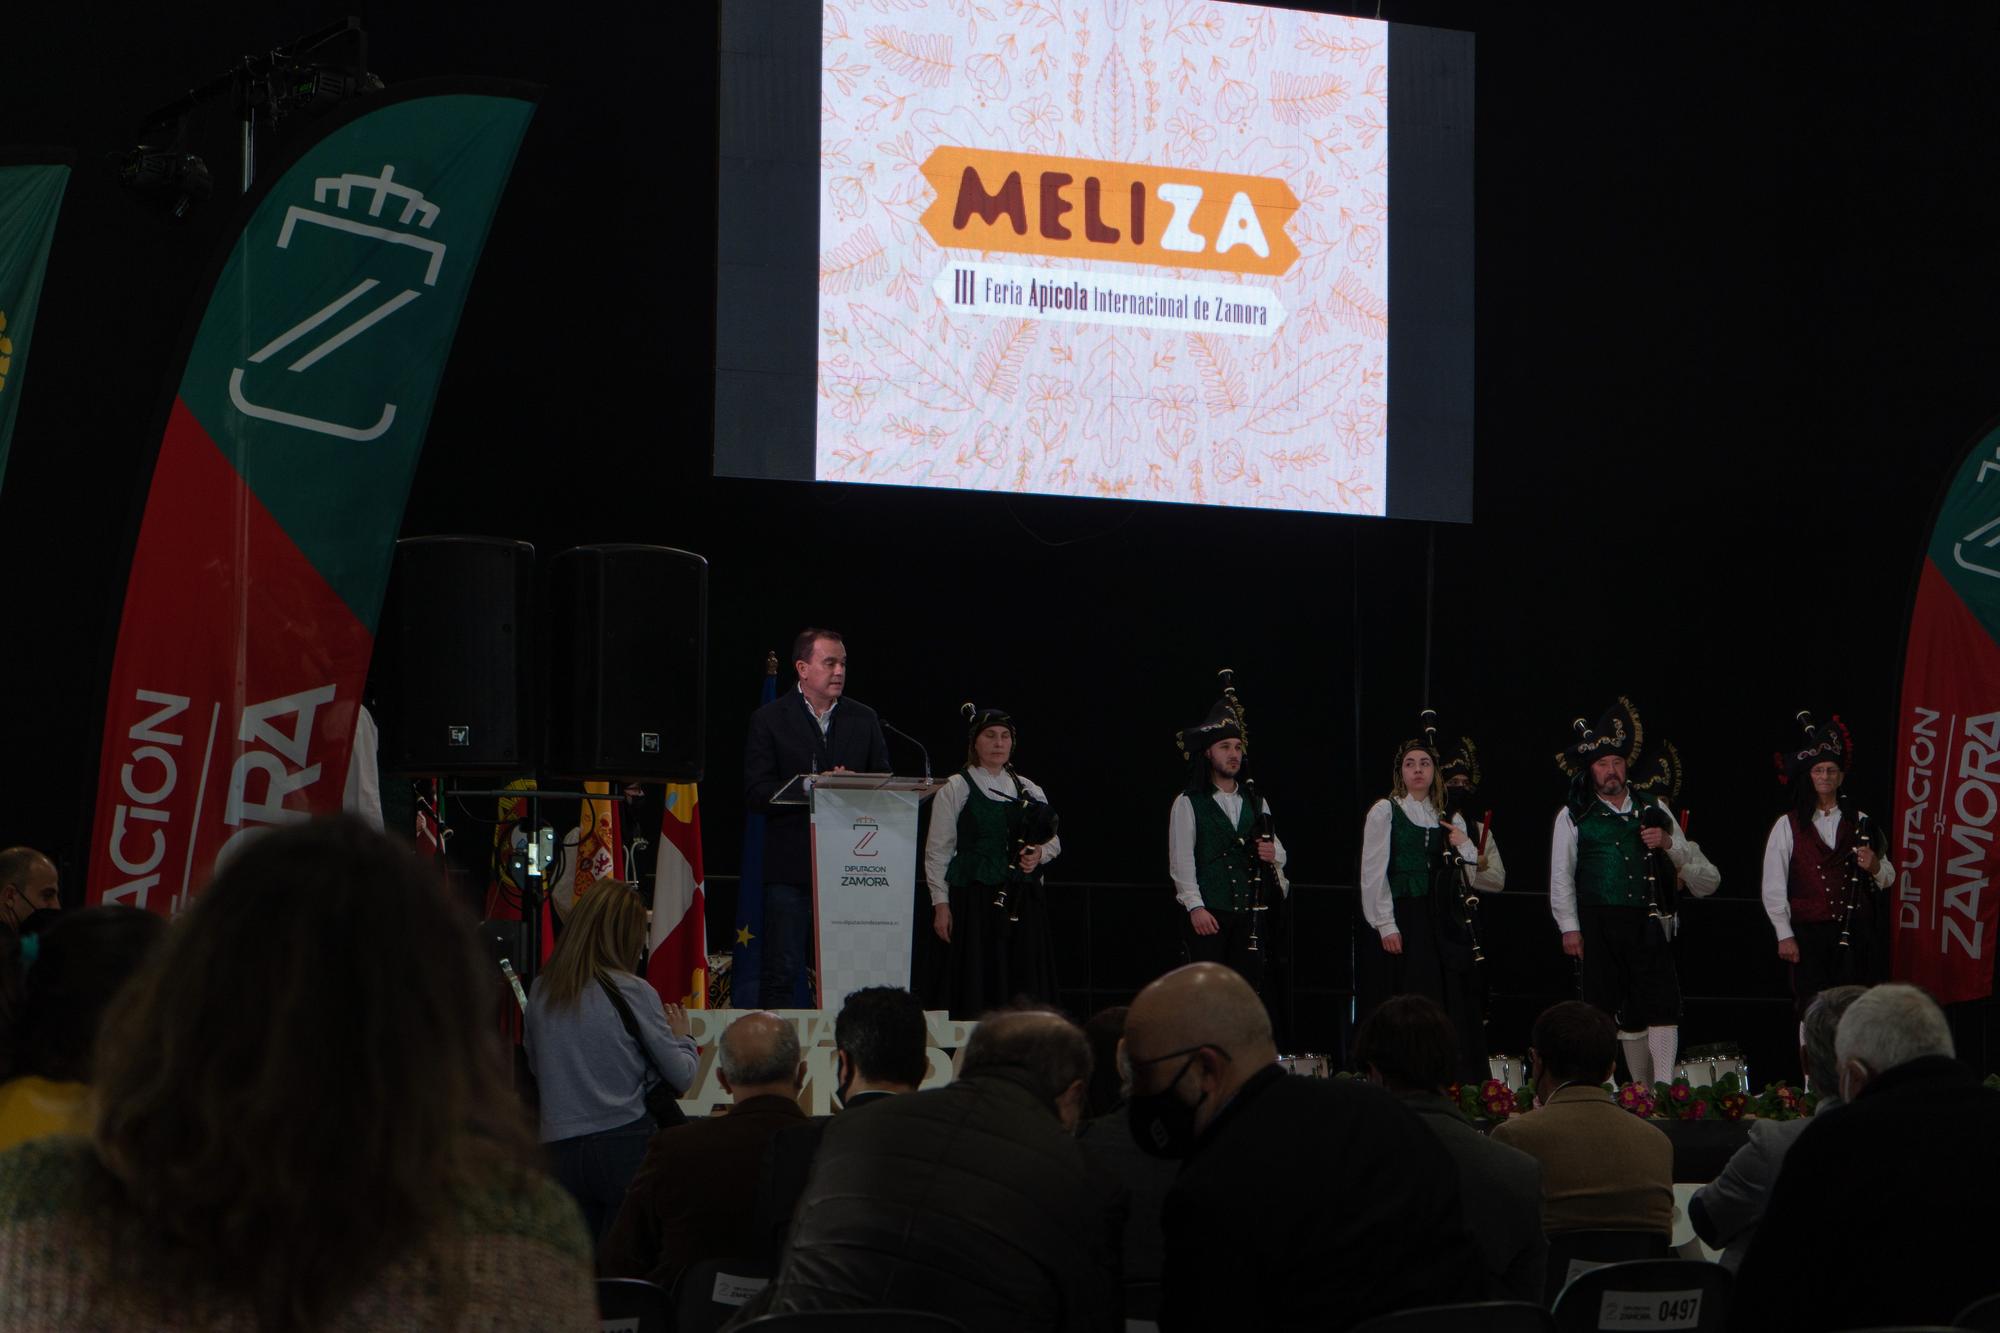 GALERÍA | La Feria Apícola 'Meliza' de Zamora, en imágenes